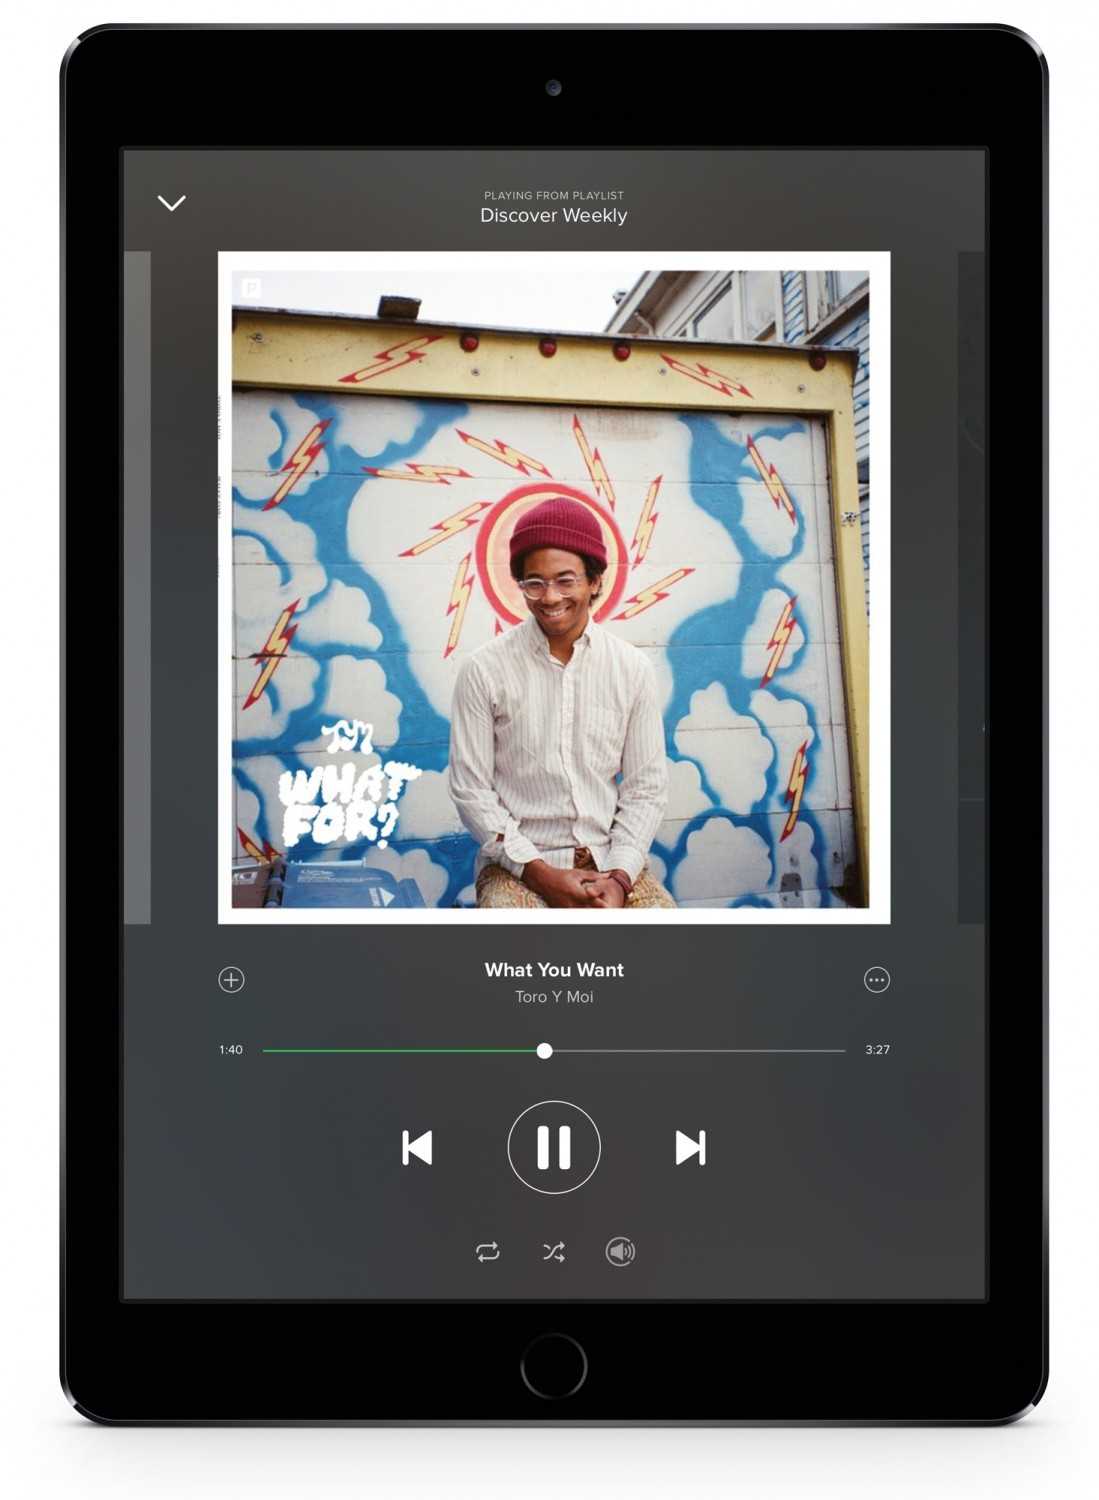 Ratgeber Spotify: Hier gibt es eine Gratis-Option - Von vielen Herstellern unterstützt - News, Bild 1